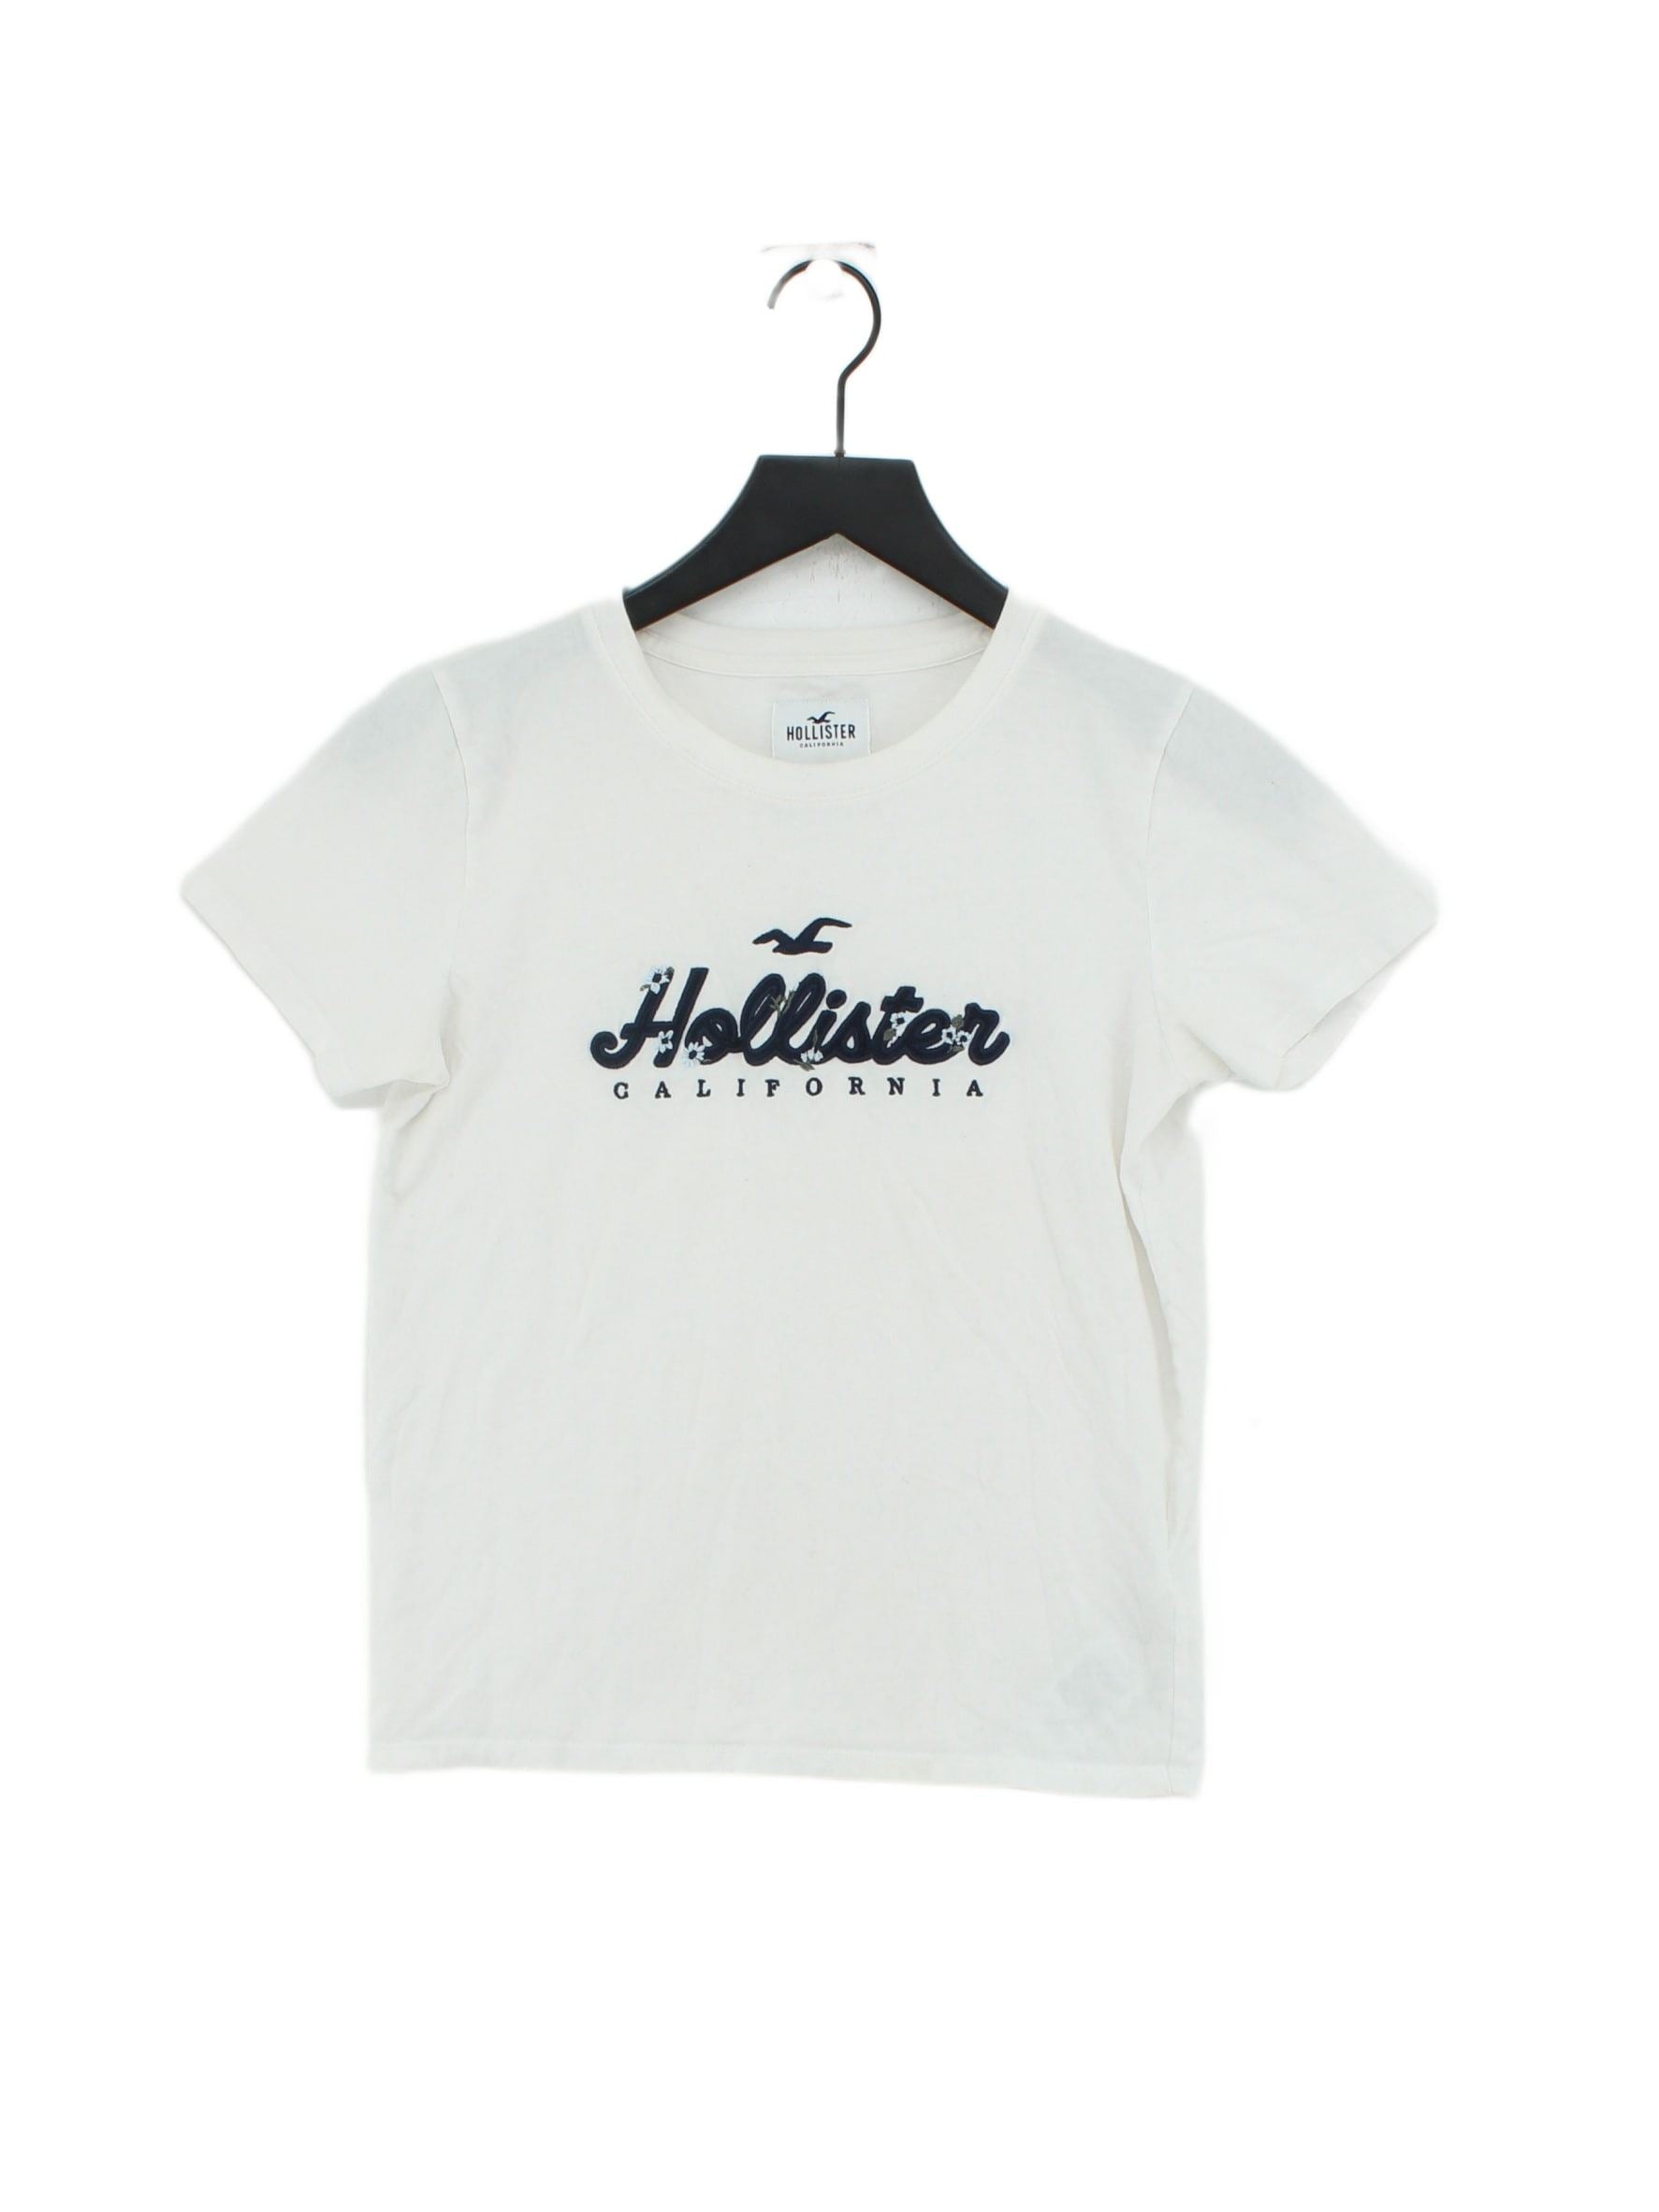 Hollister Women's T-Shirt Xs Cream 100% Cotton